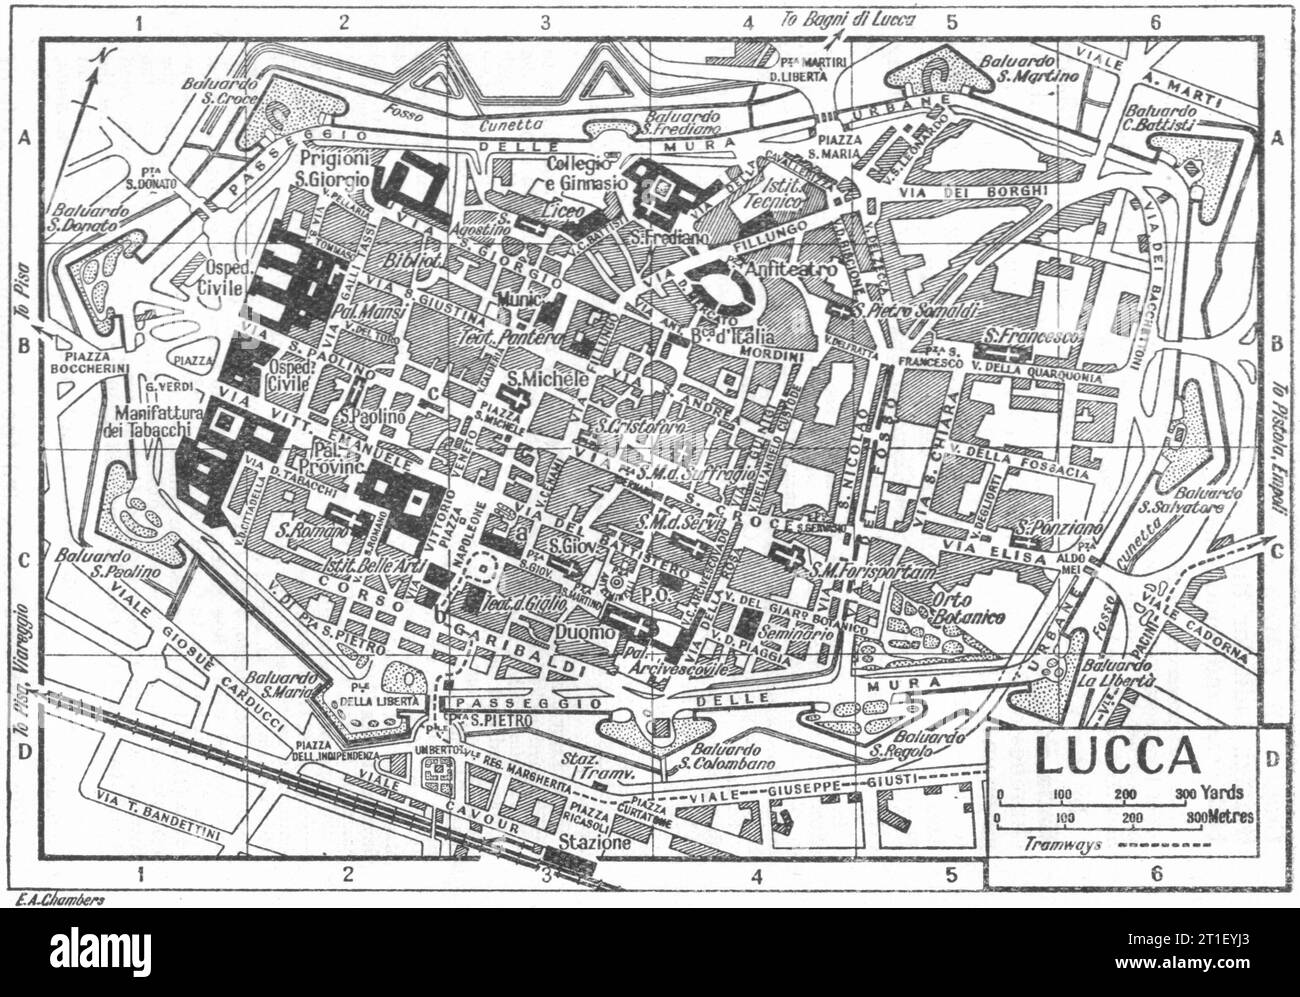 Plan de la ville DE LUCCA. Italie 1953 ancienne carte vintage Banque D'Images